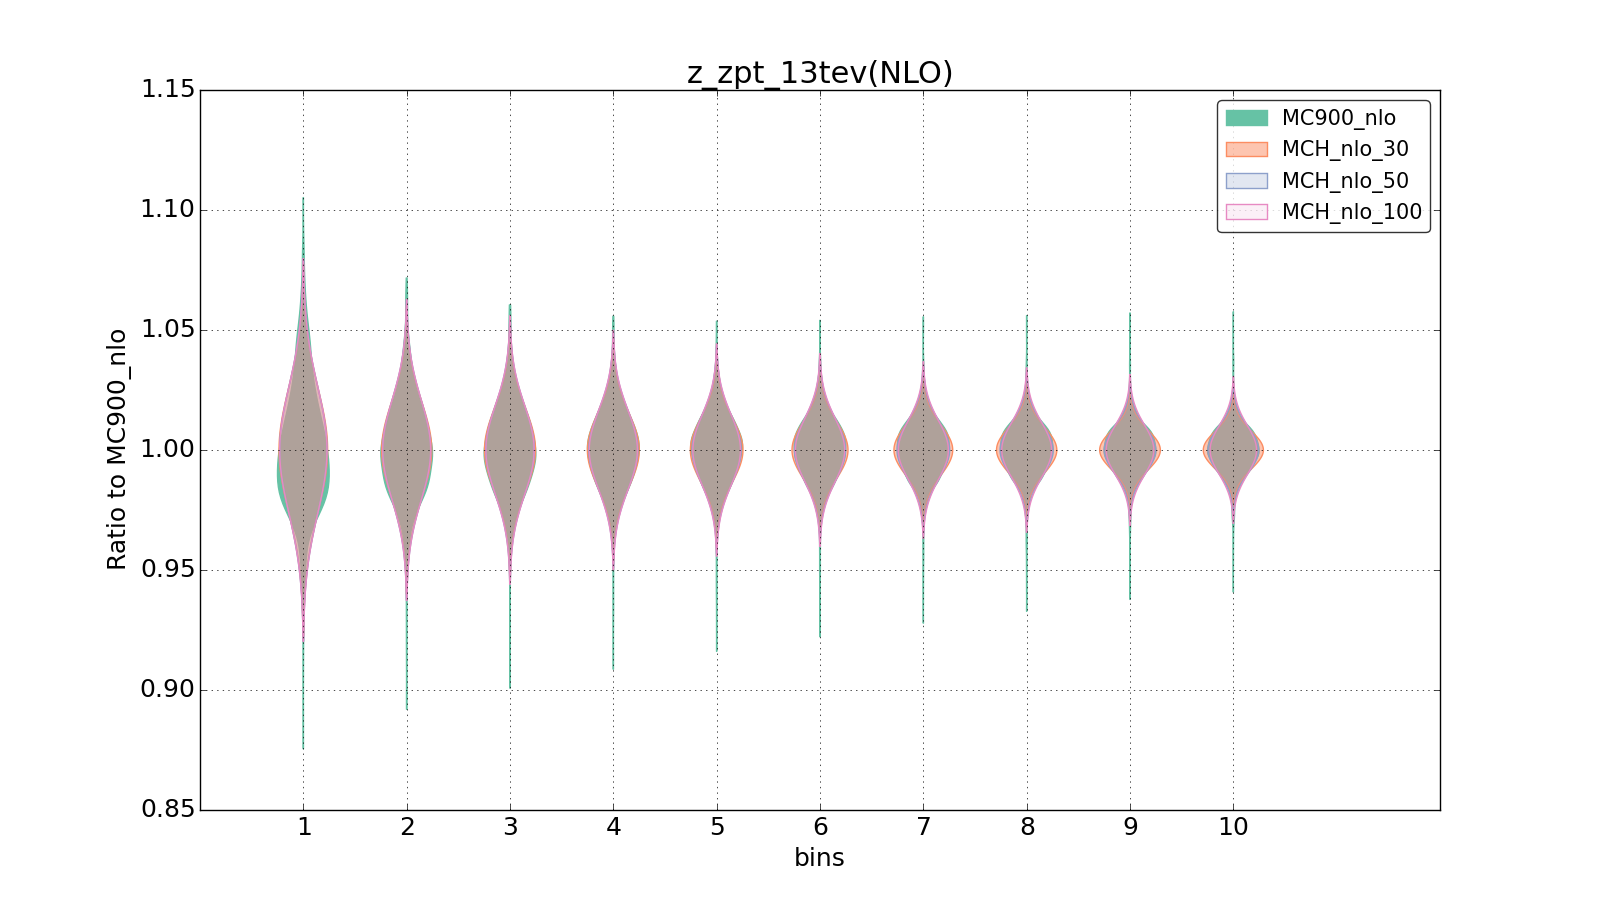 figure plots/pheno_new/NLO/violinplot_z_zpt_13tev(NLO).png